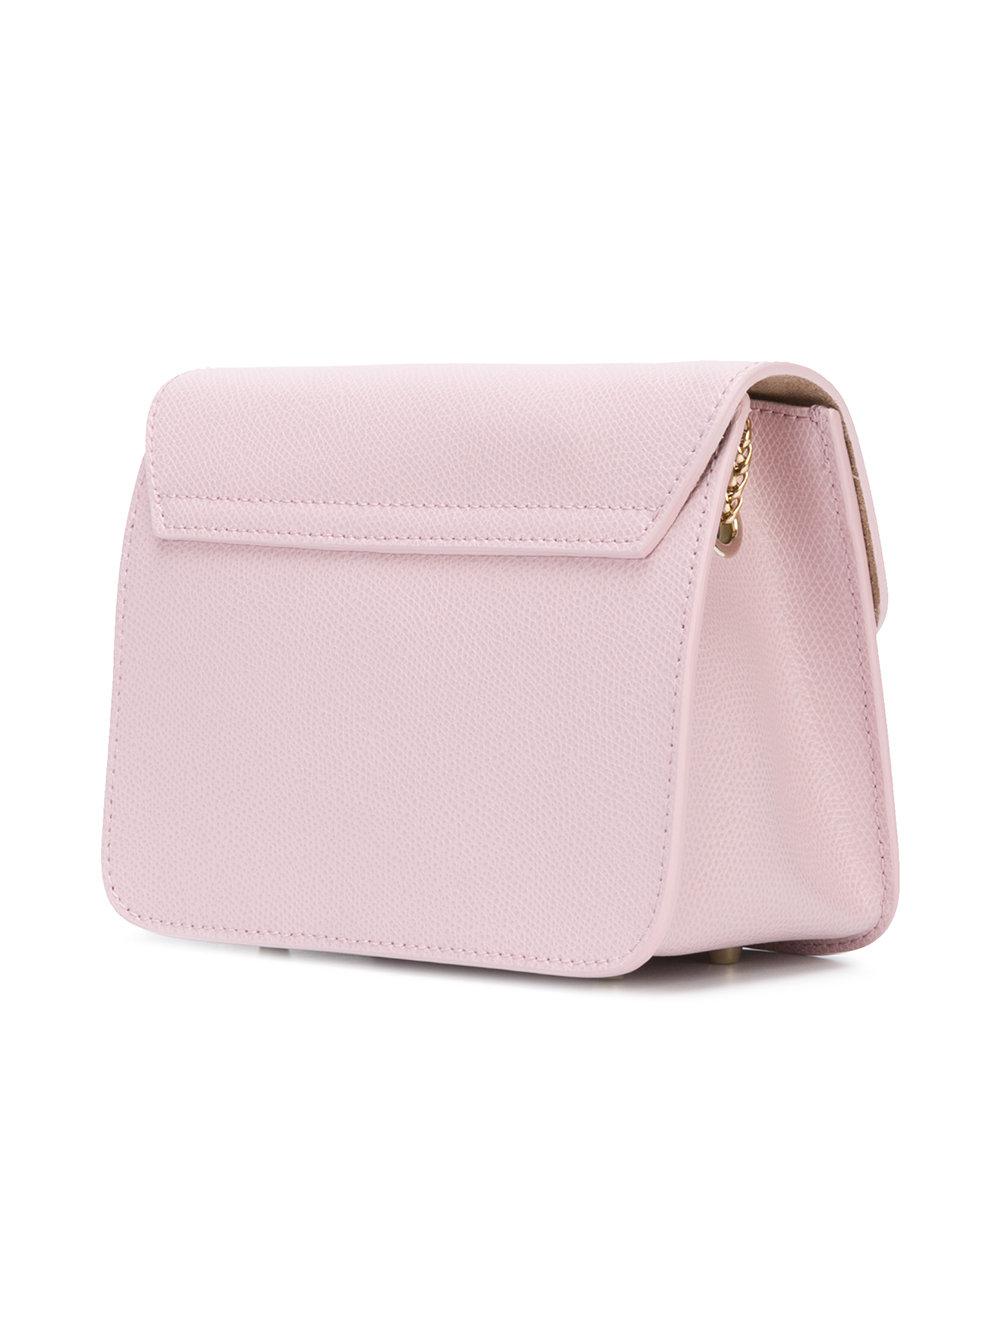 Furla Pink Camellia Leather Shoulder Bag - Lyst